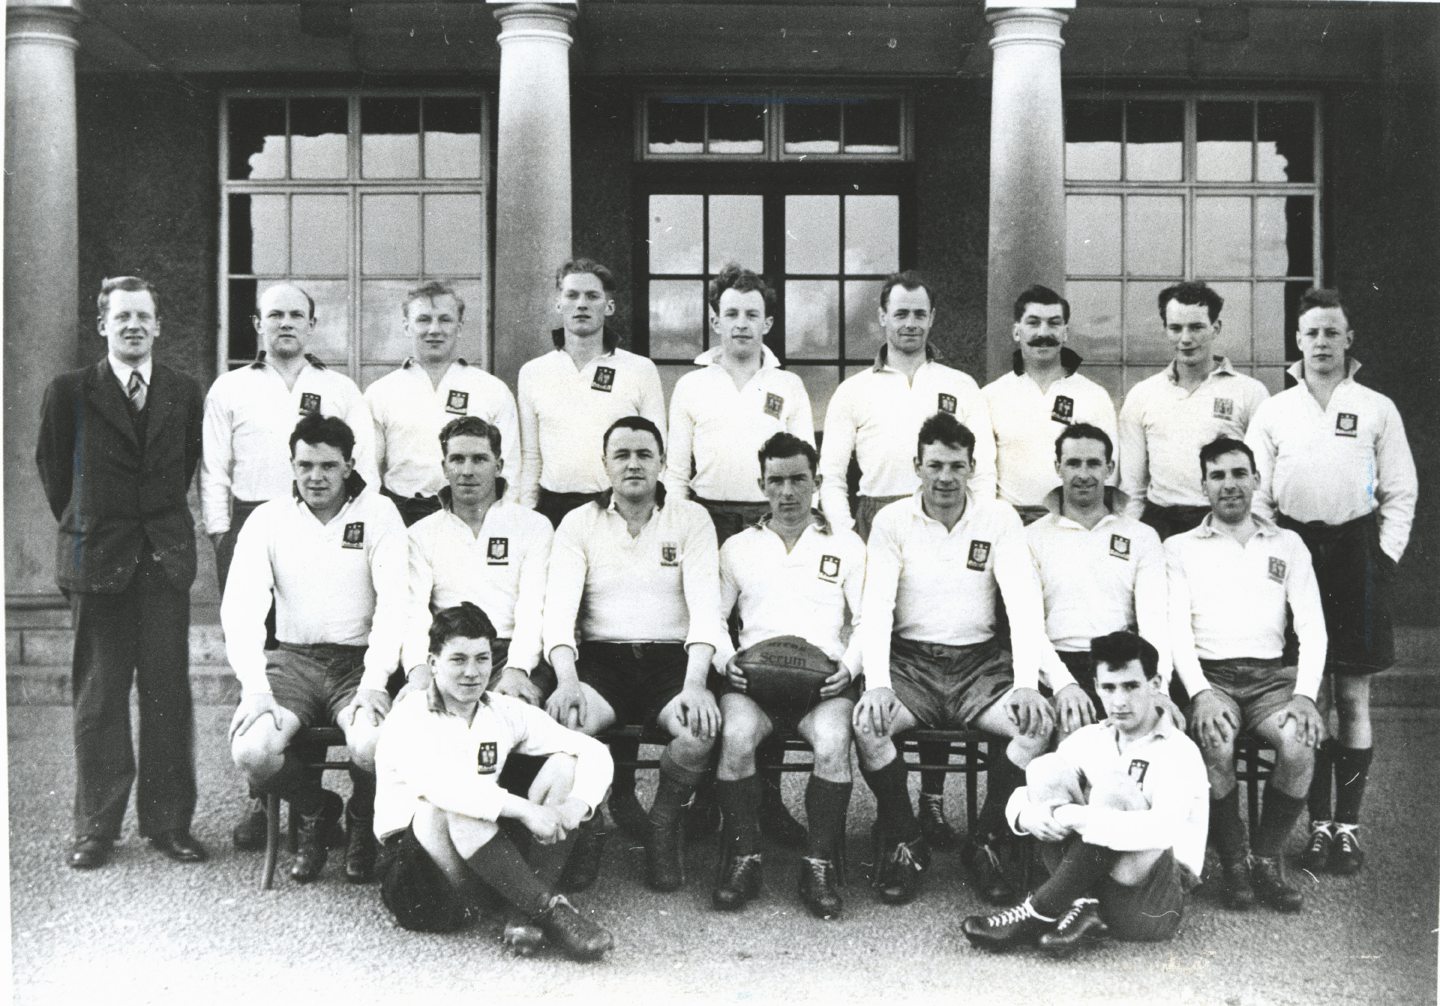 Aberdeen Gramma FPs rugby team in 1948.